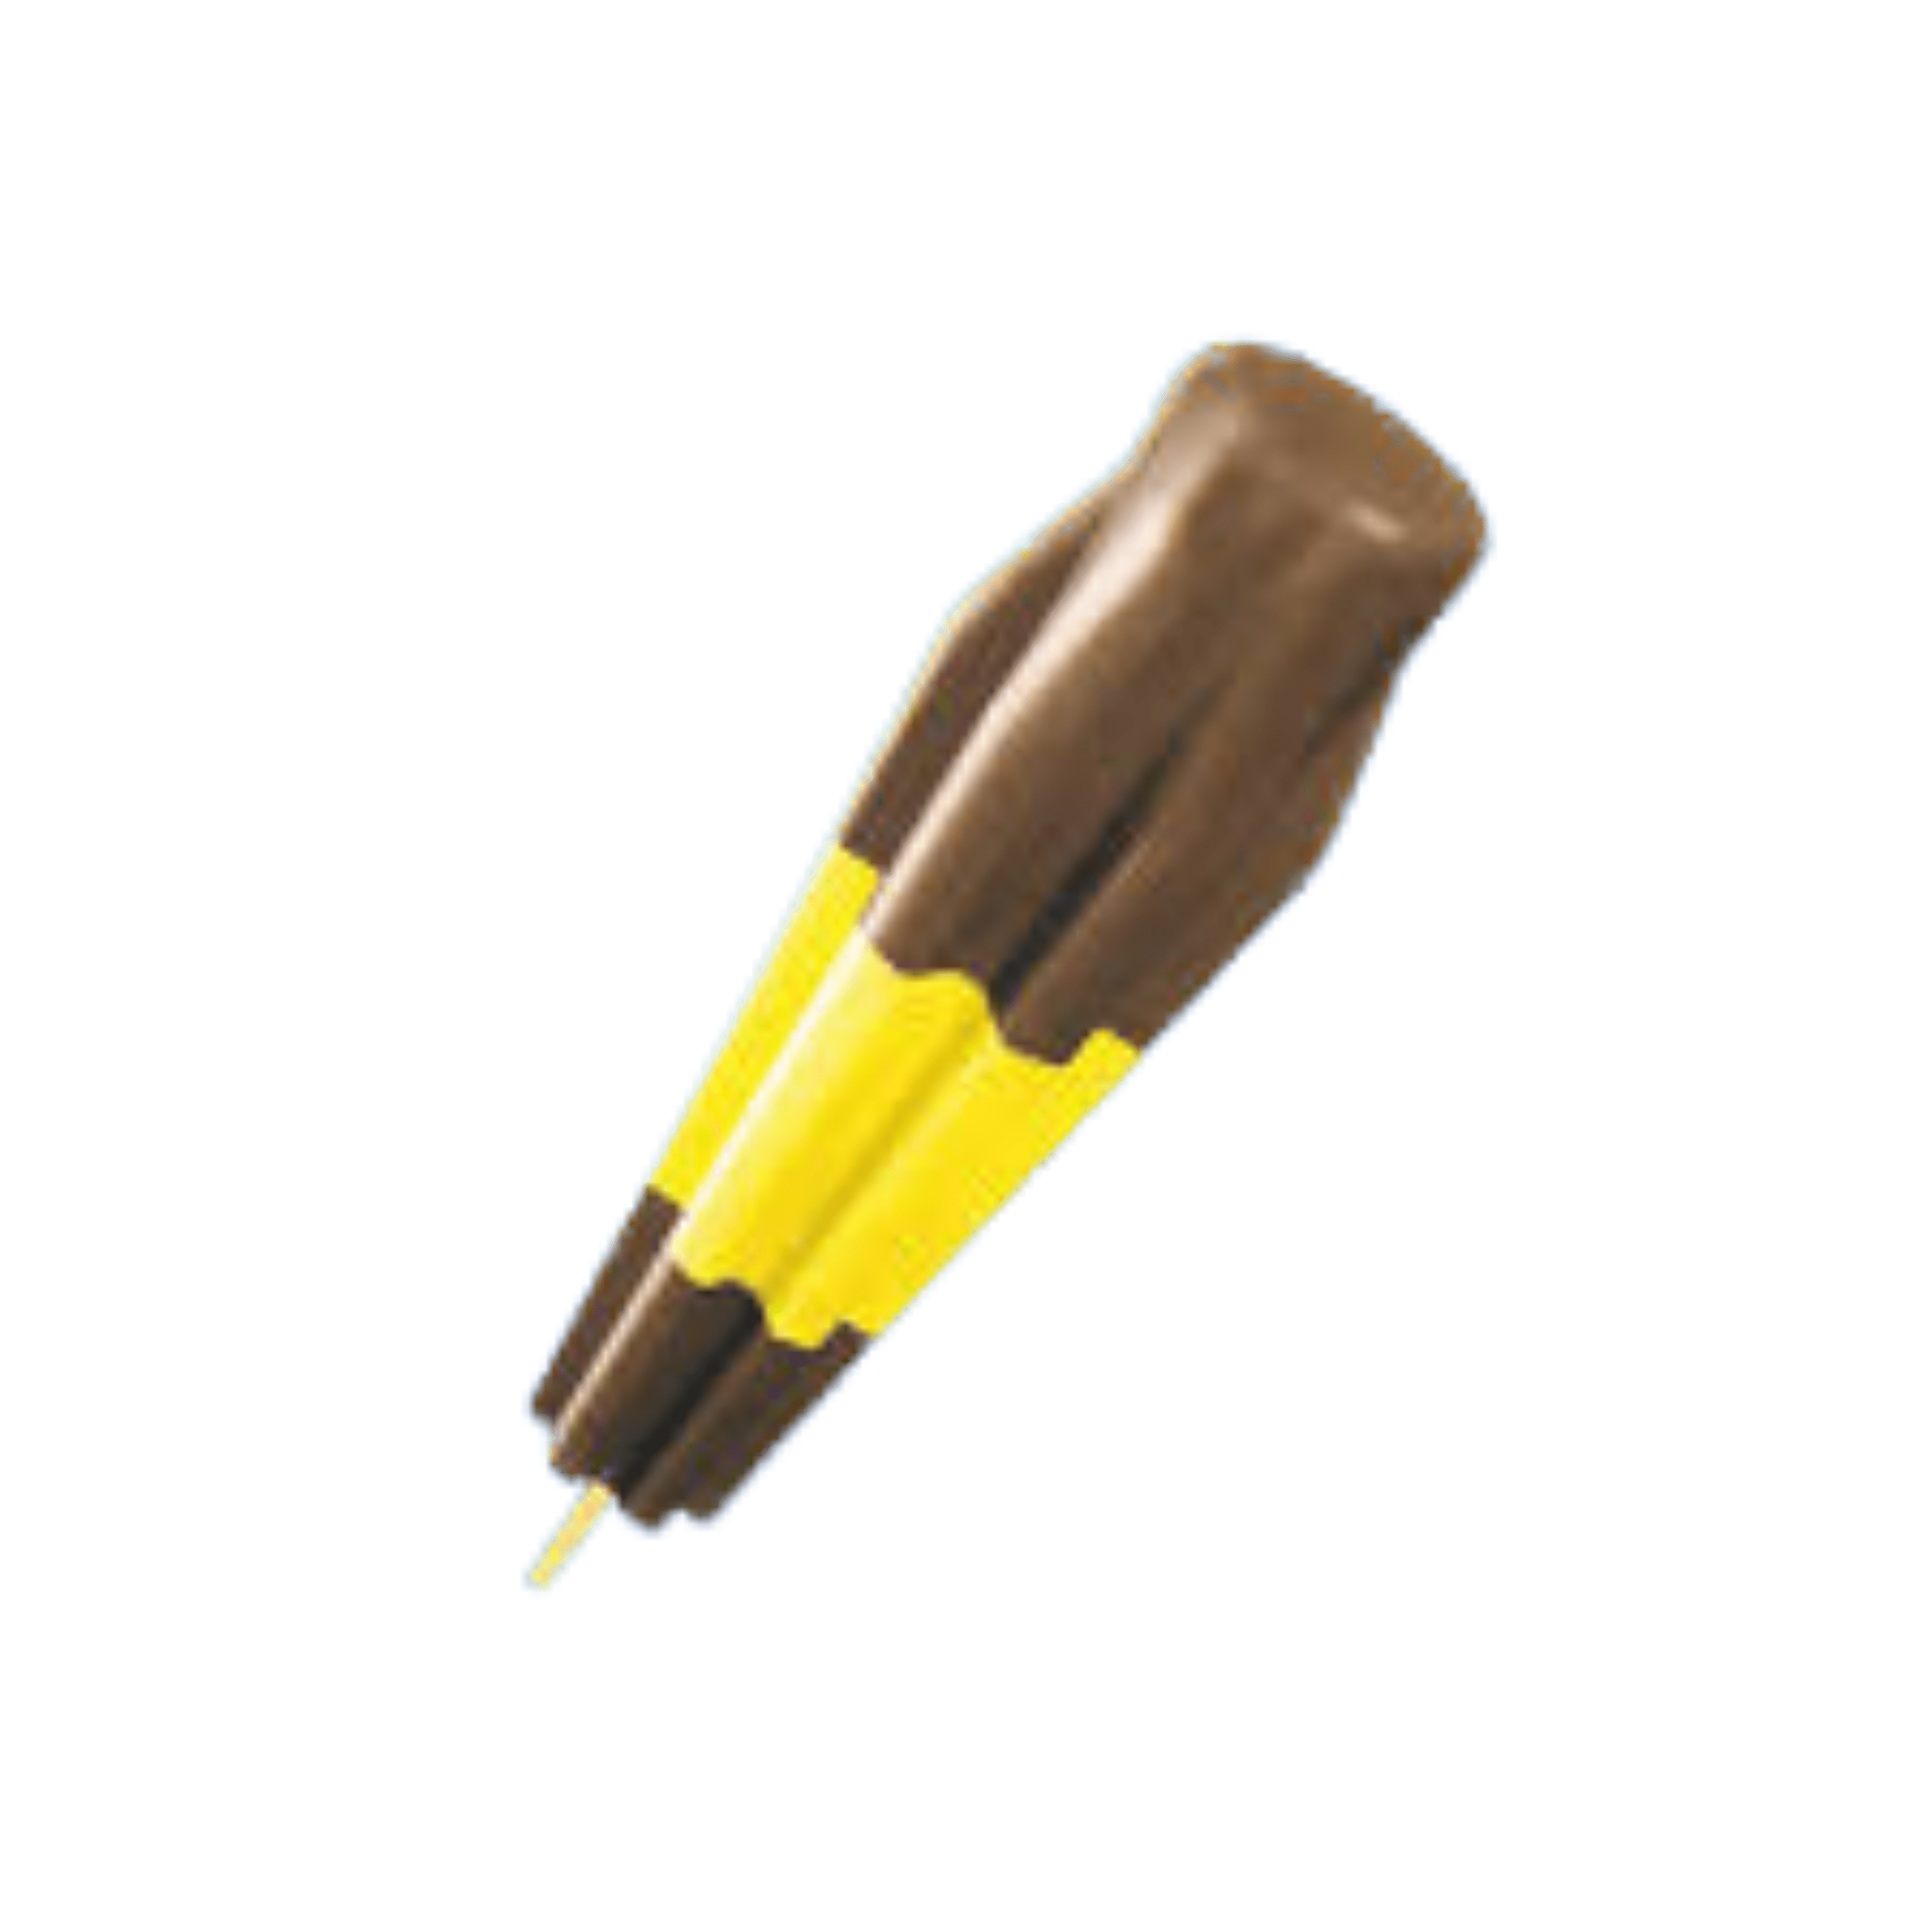 Banana fudge bomb pop